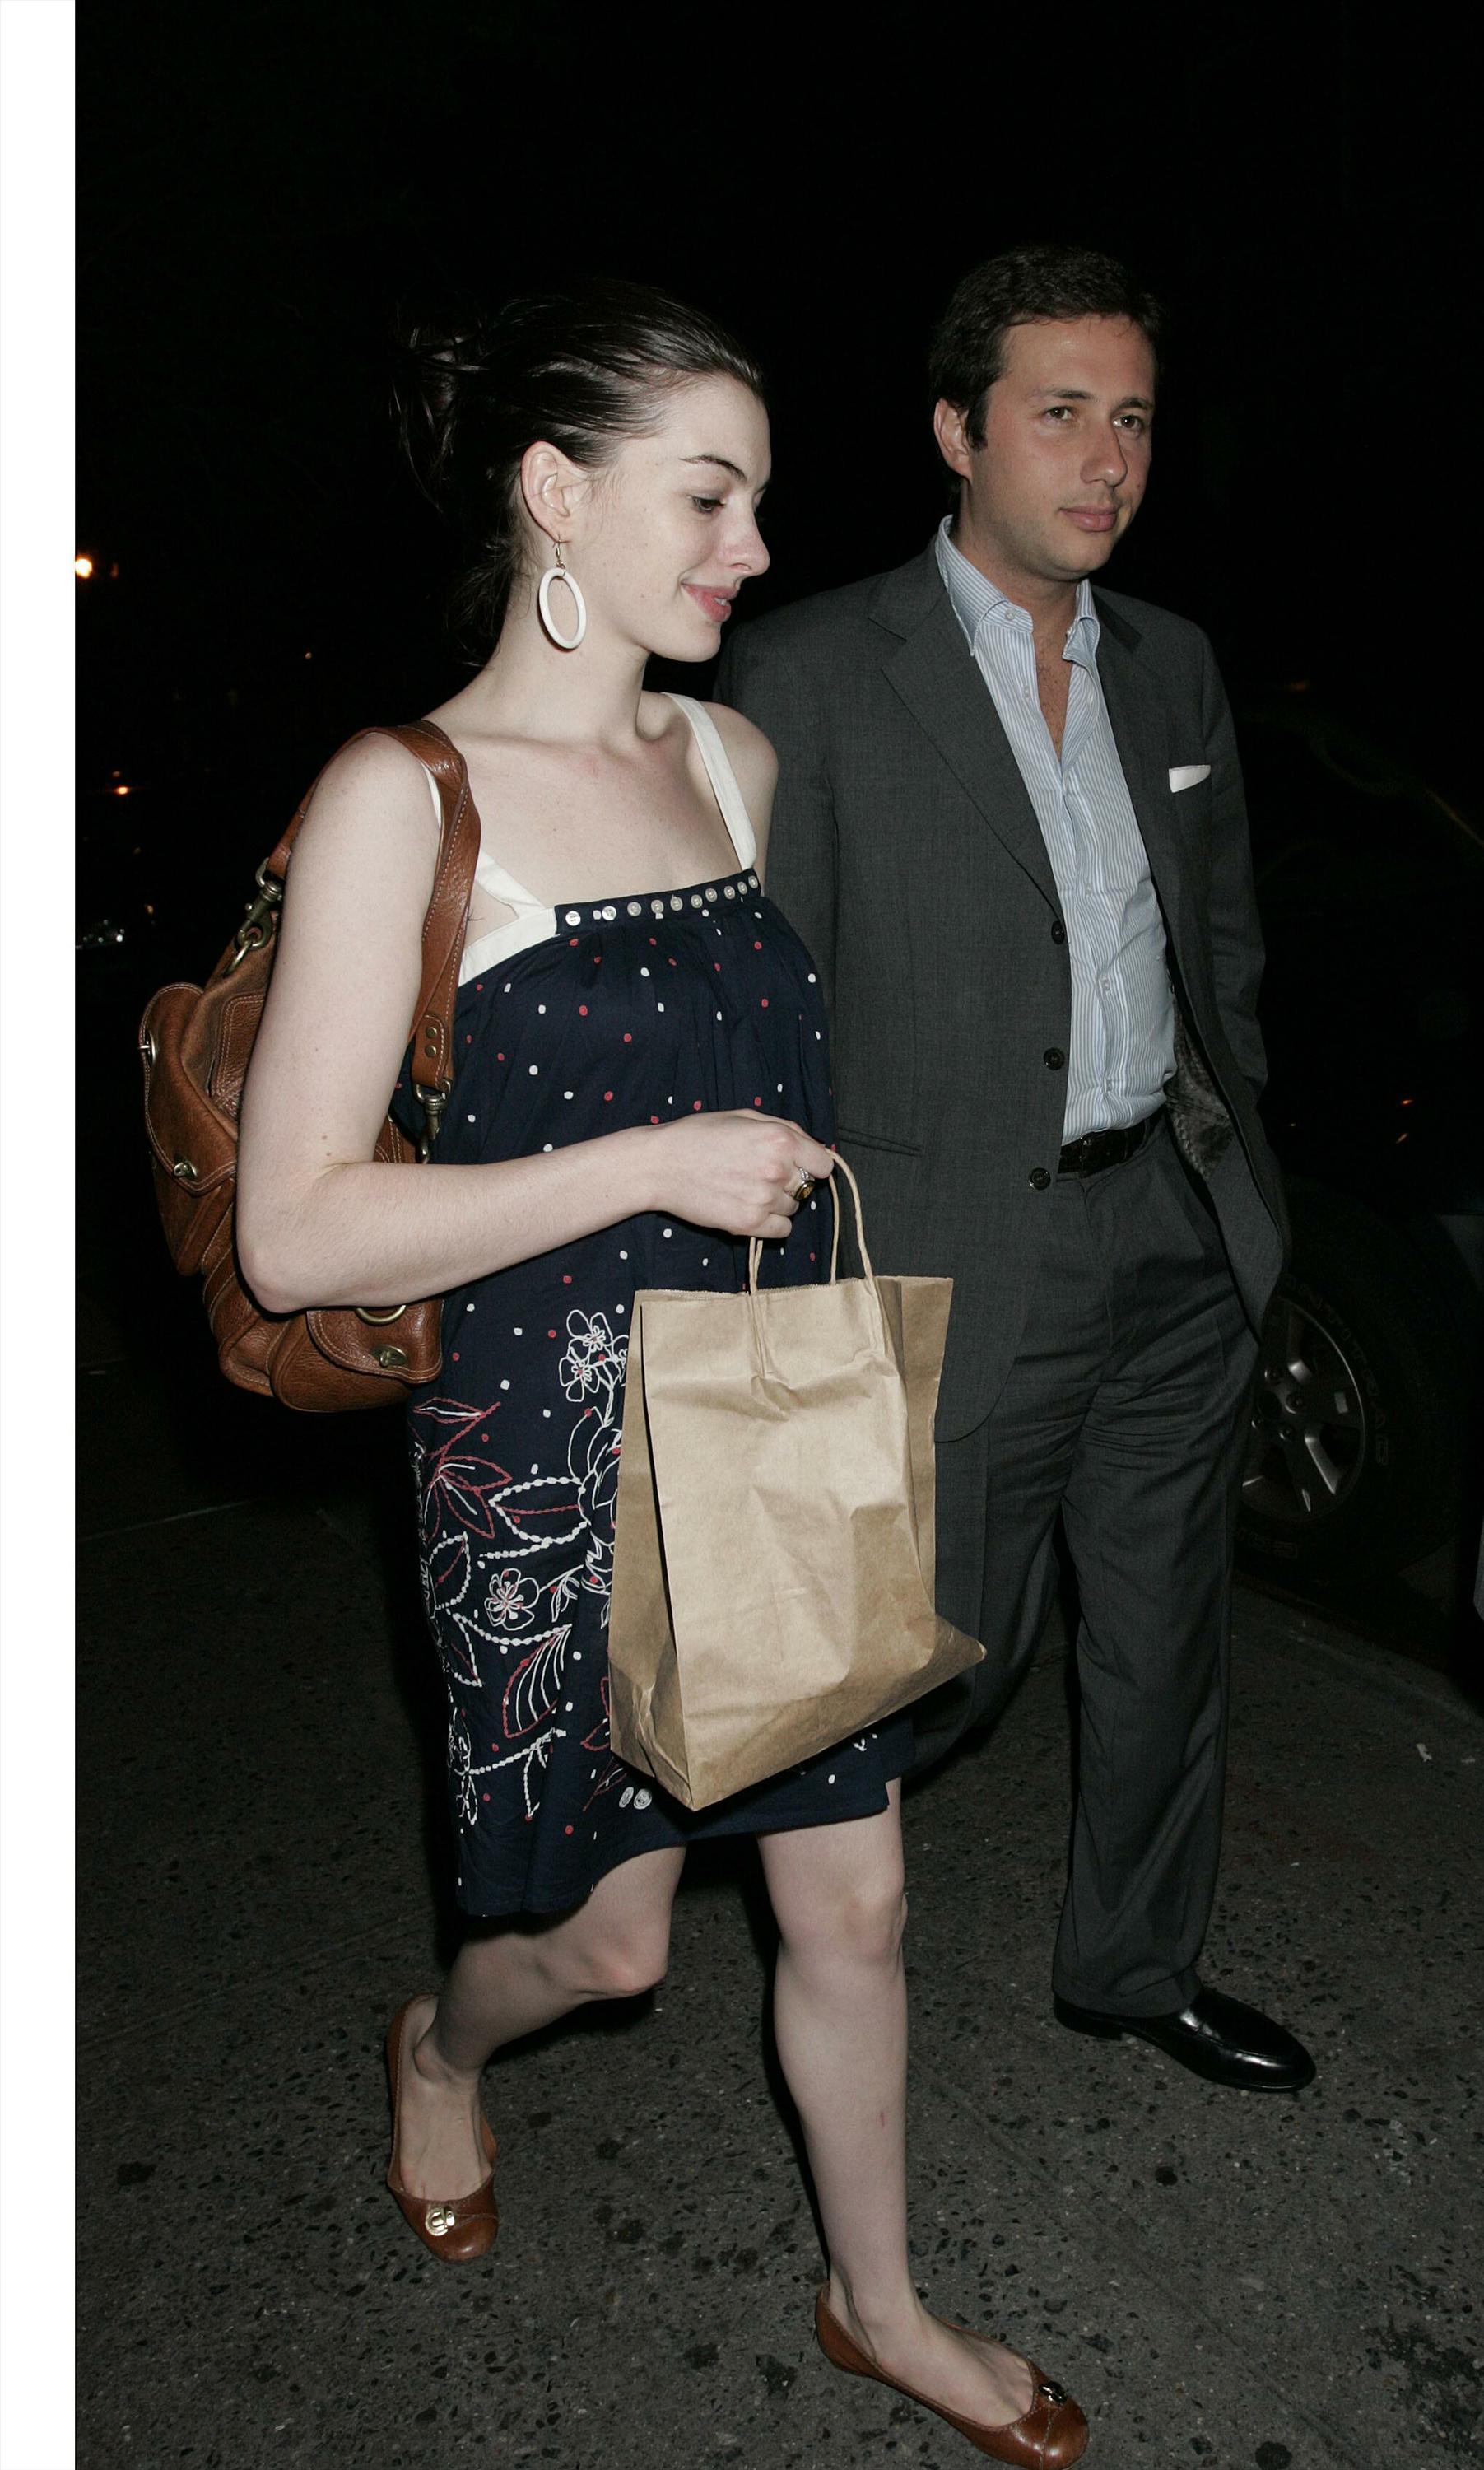 Anne Hathaway and boyfriend leave a lower Manhatten restaurant-8